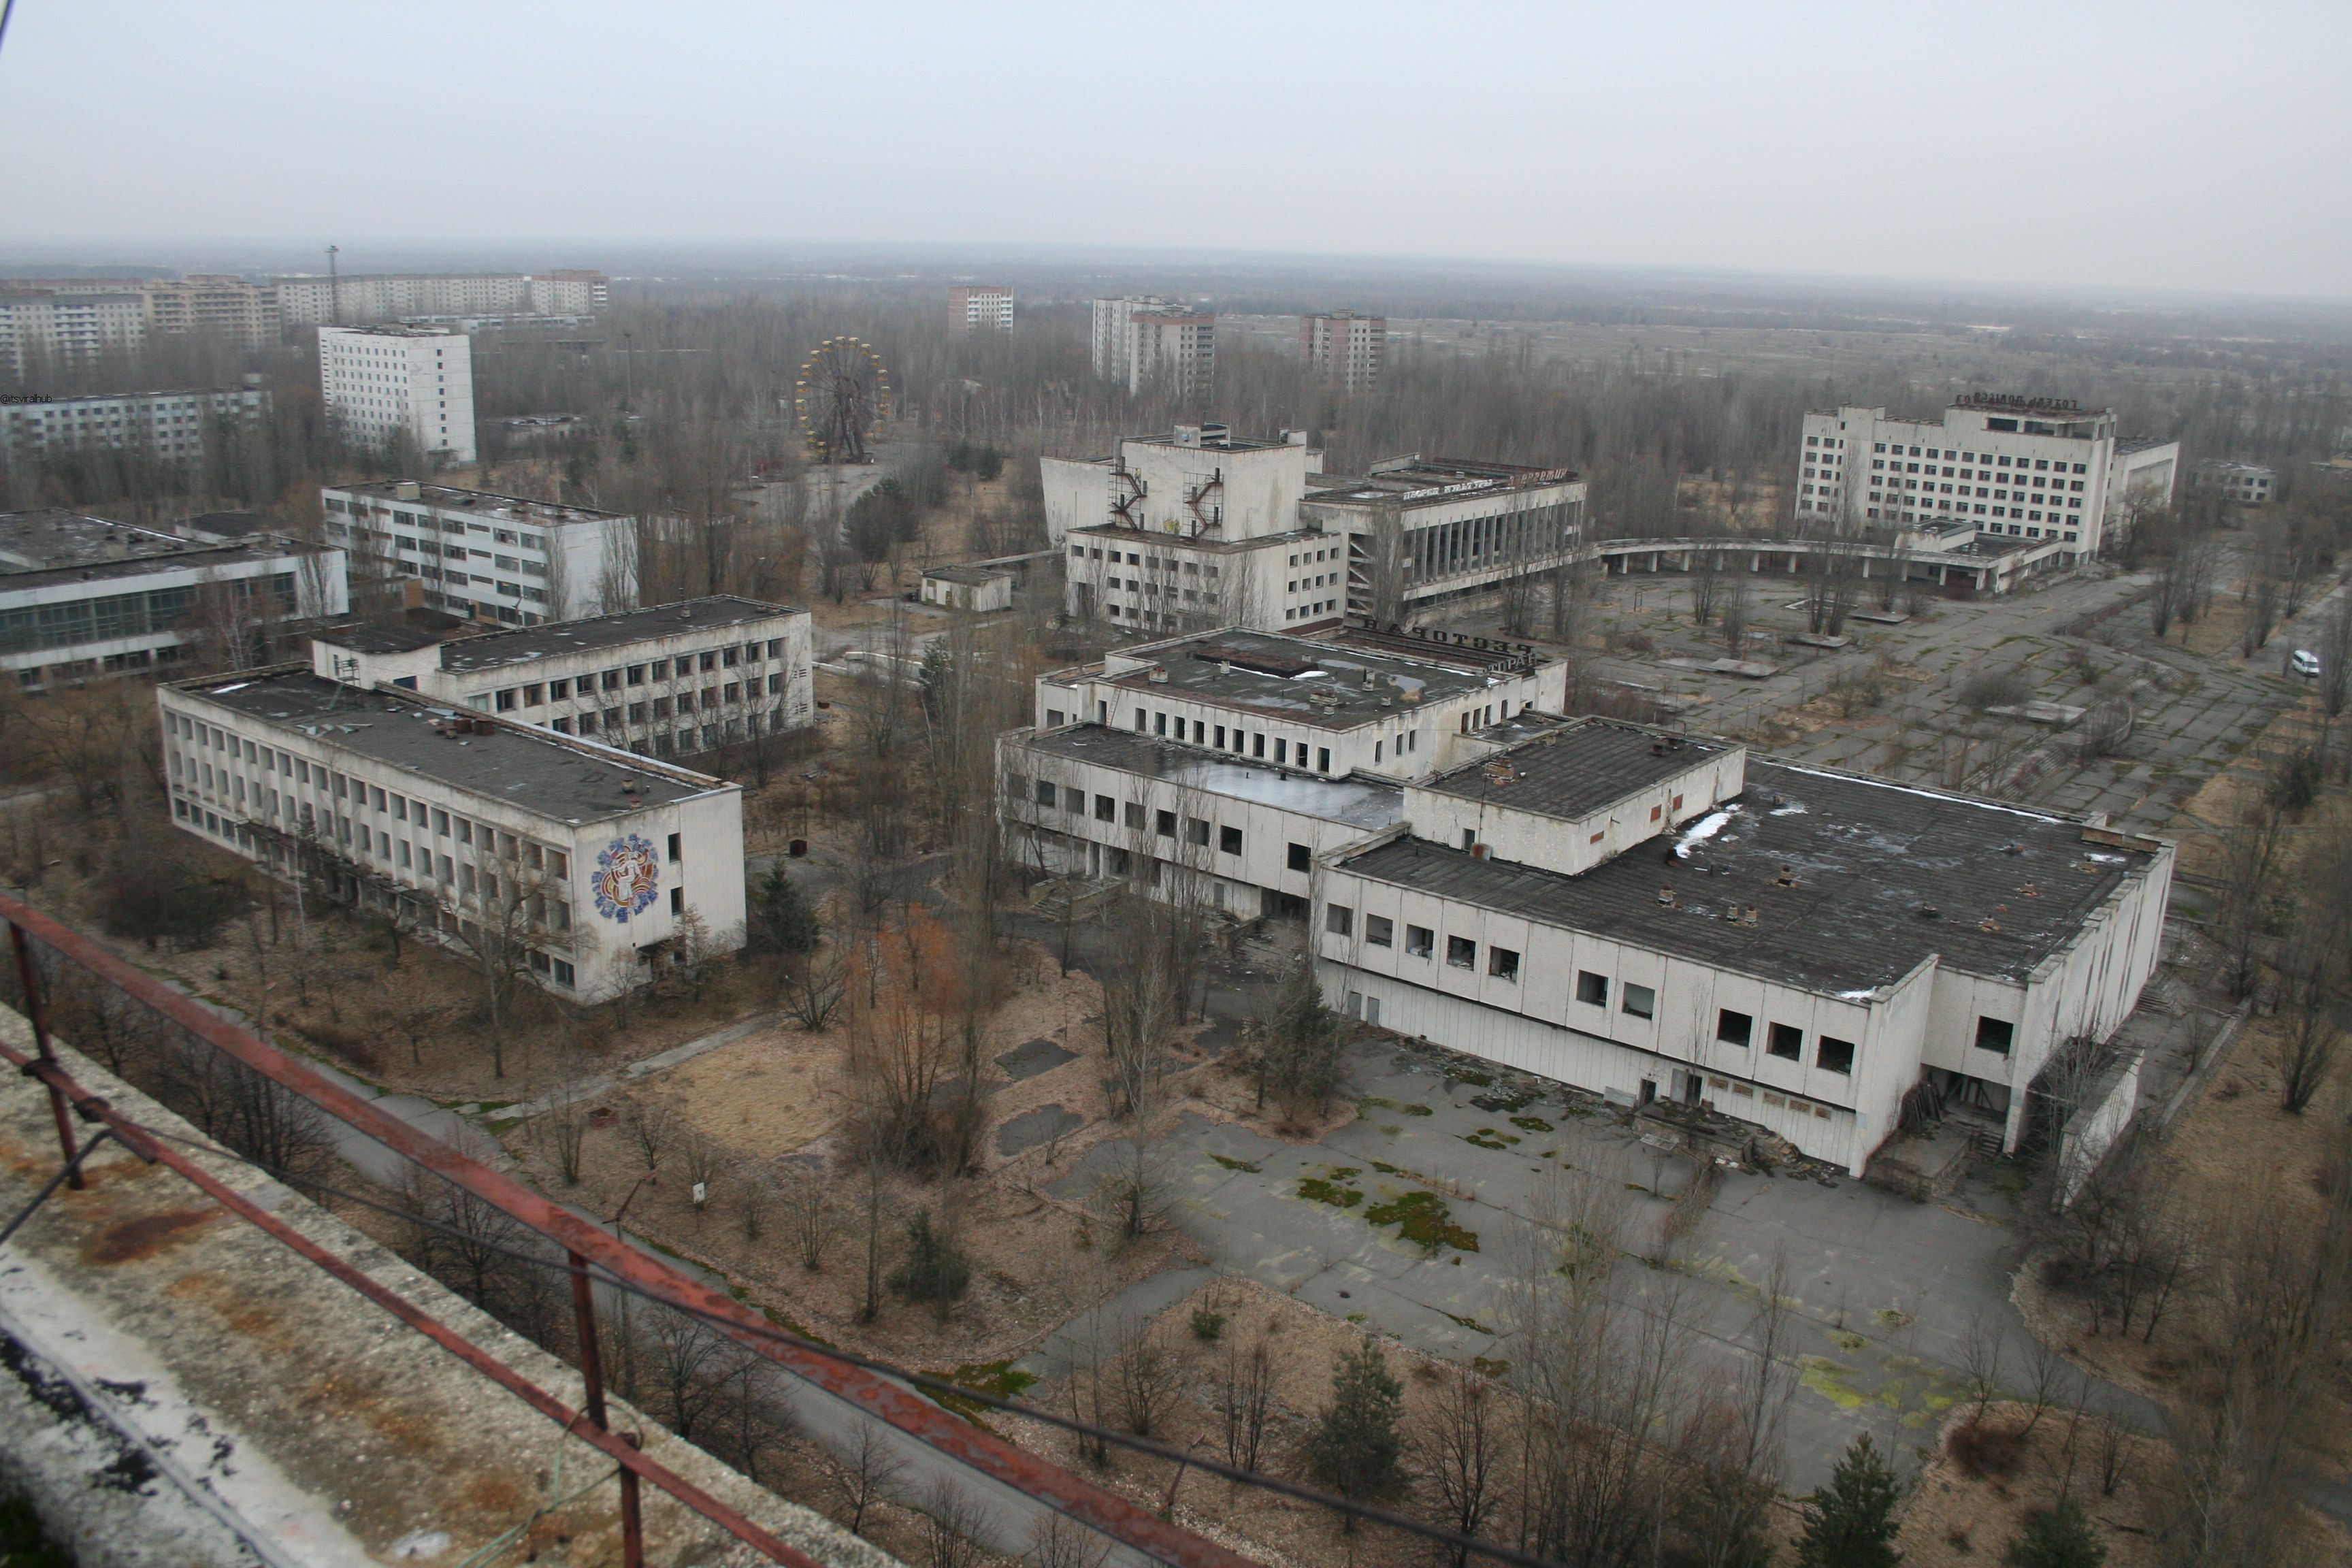 Chernobyl’s Exclusion Zone, Ukraine